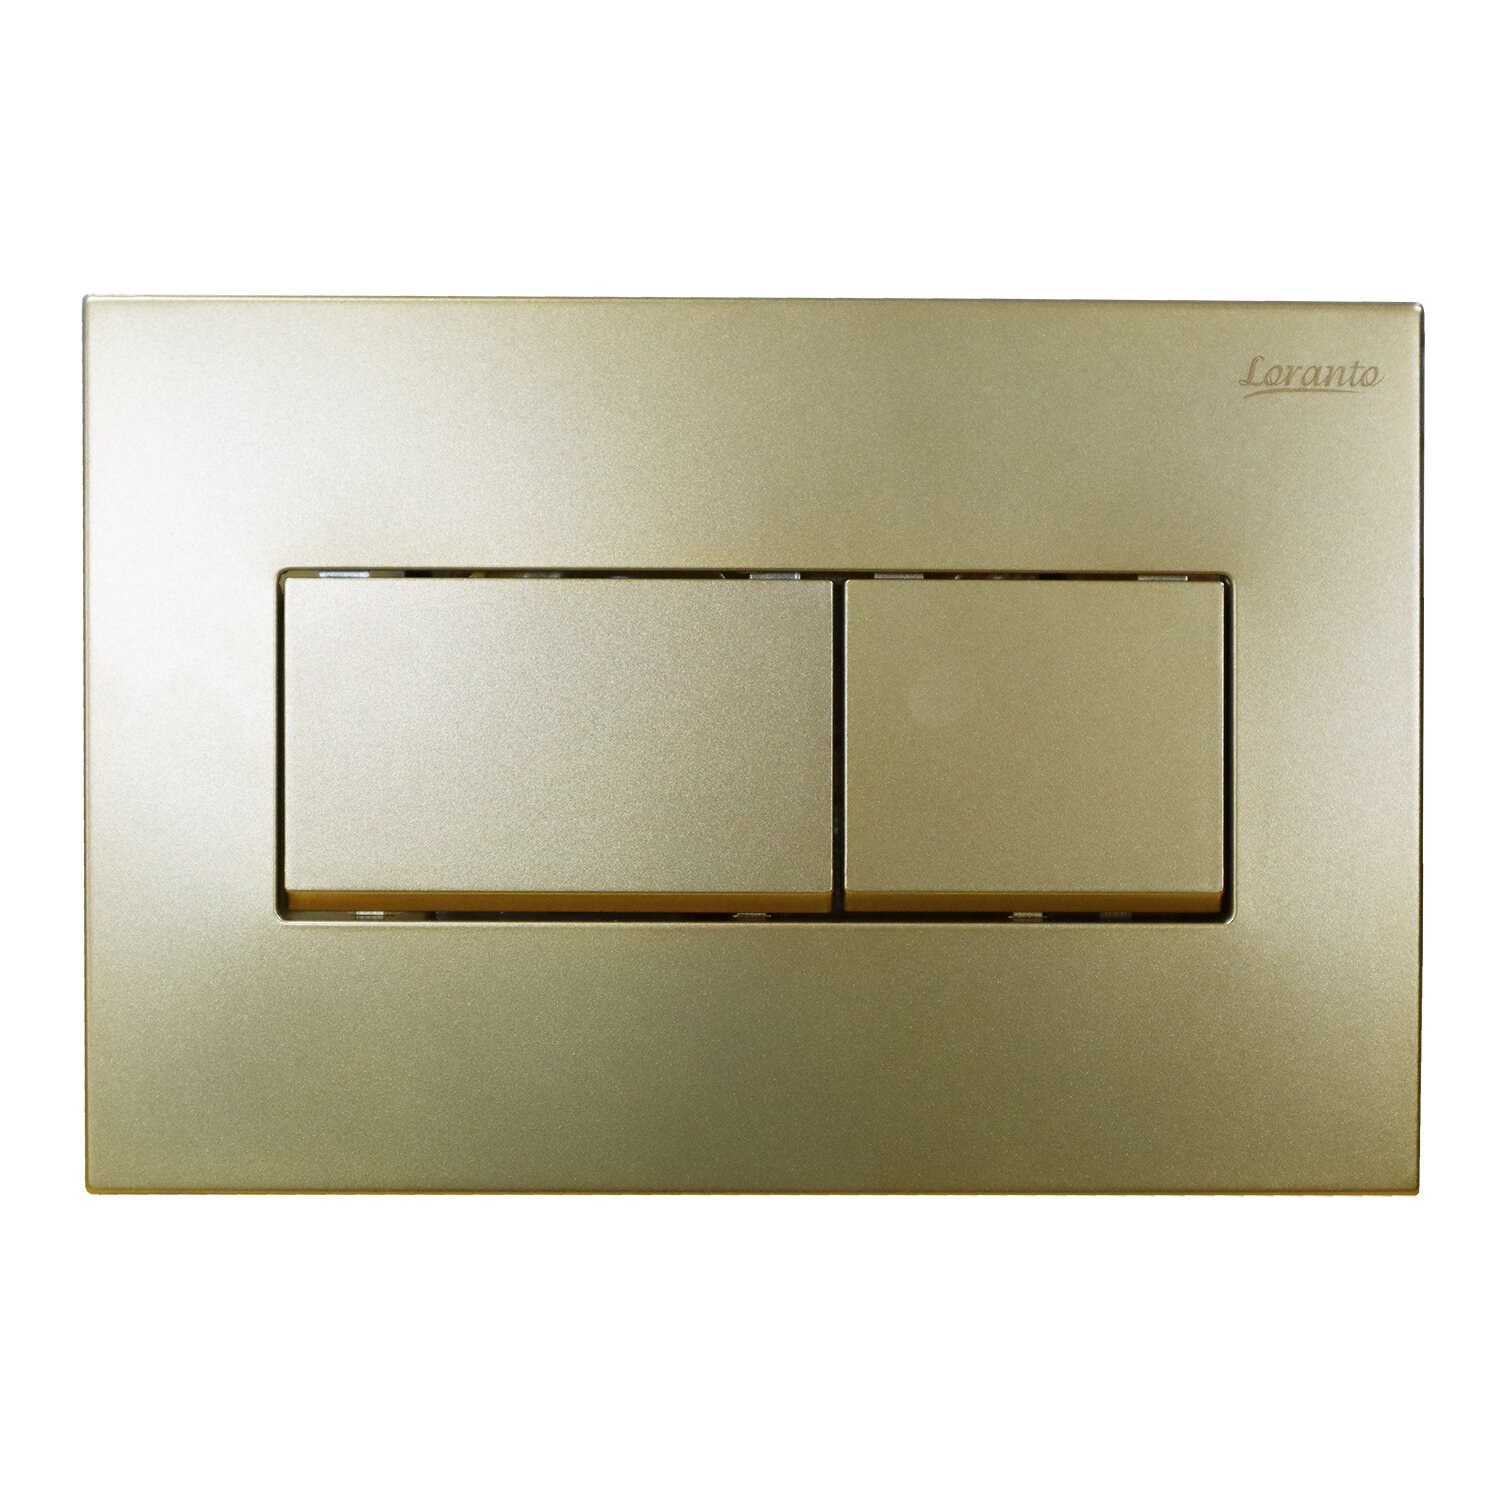 Кнопка смыва Loranto KARE 24.5х16.5 для инсталляции, пластик, цвет Золото матовое (7335)